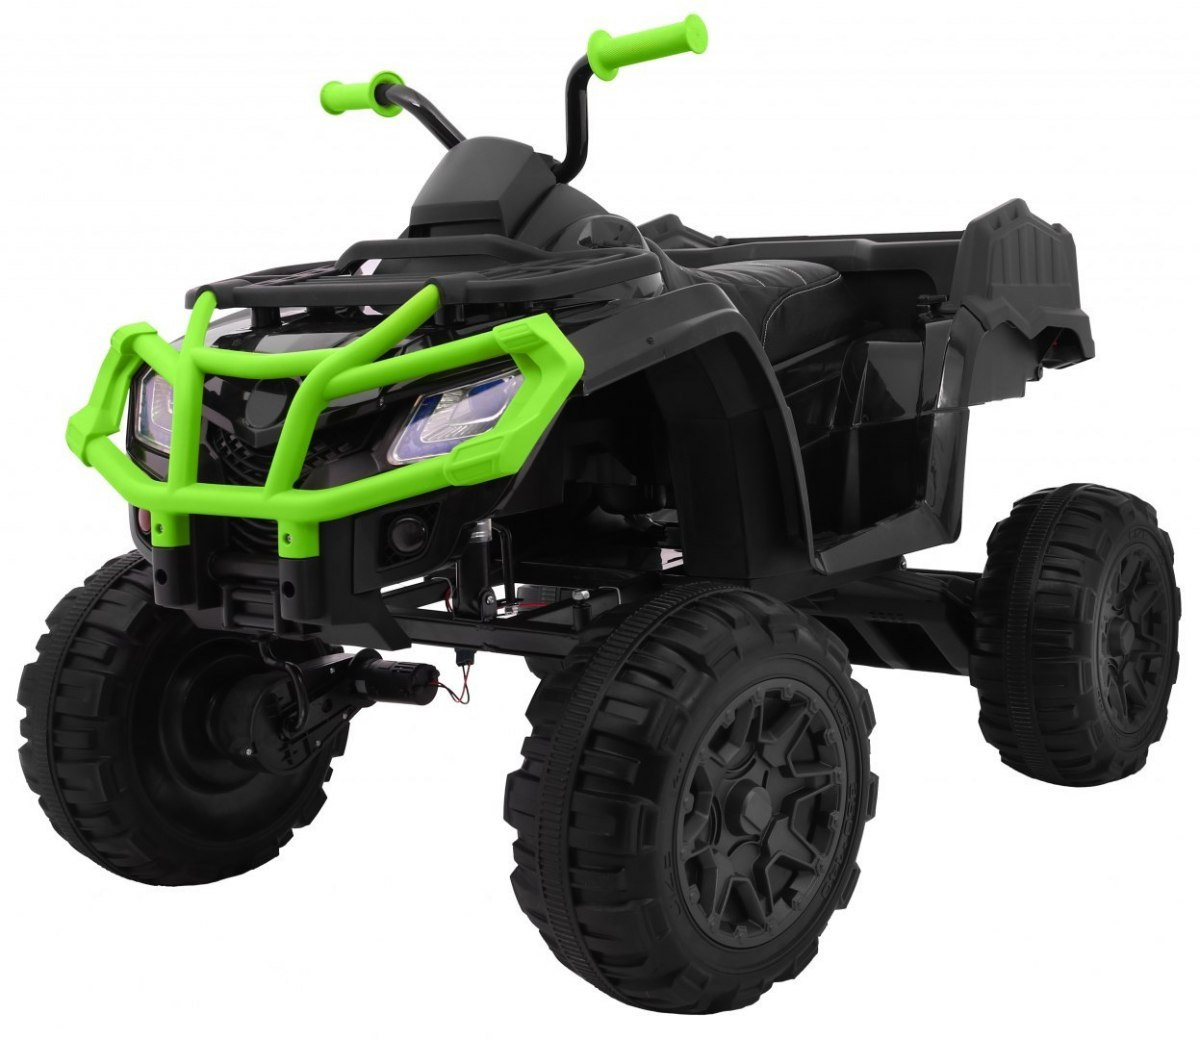  Dětská elektrická čtyřkolka ATV XL s ovládačem zelená